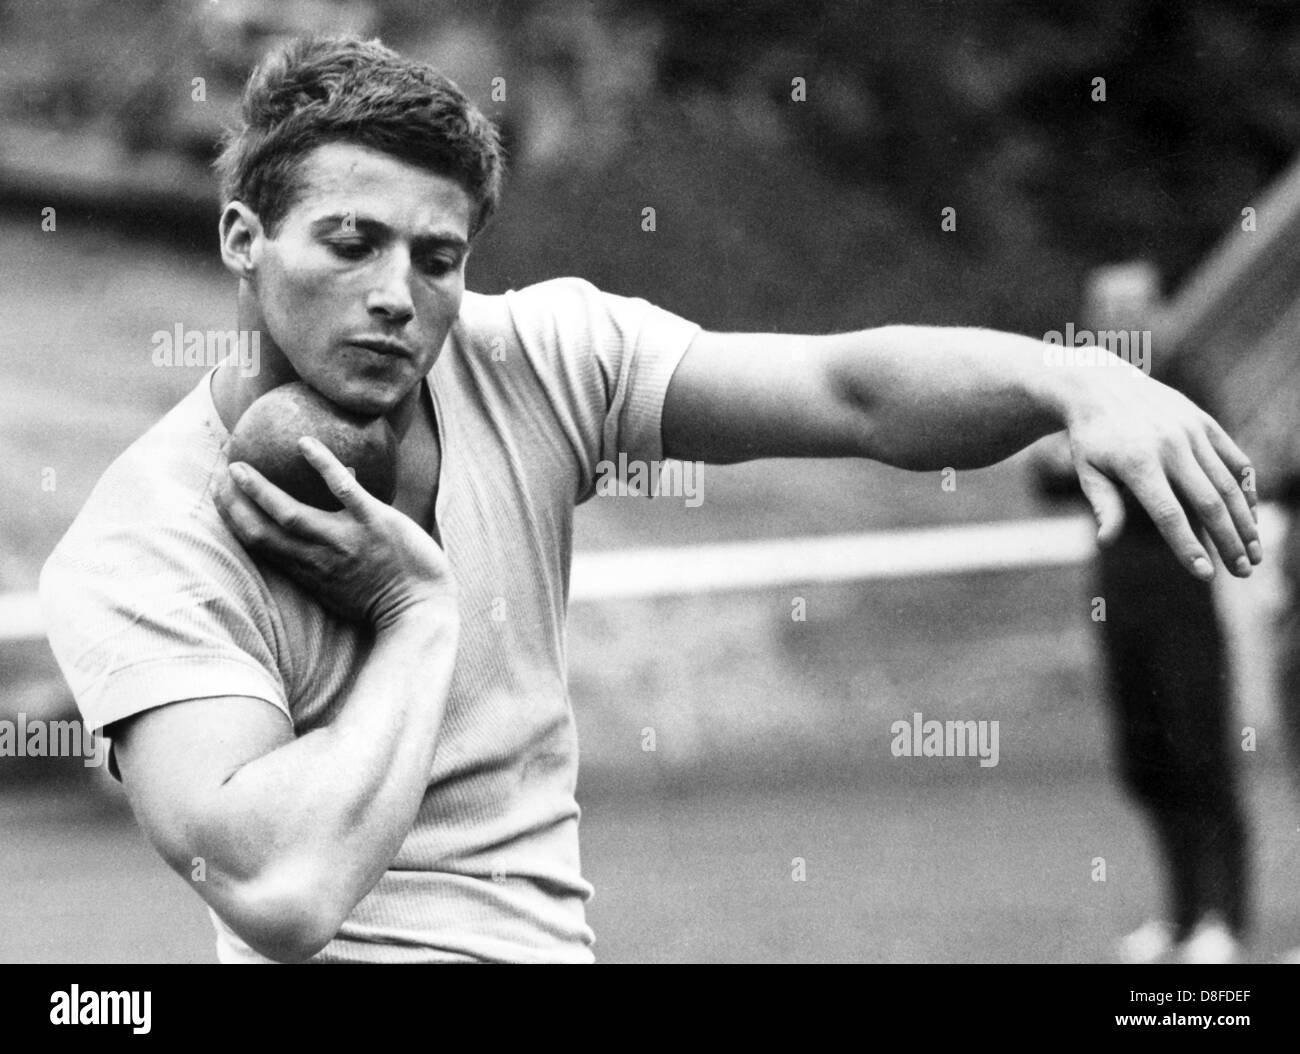 Kurt Bendlin Praktiken Kugelstoßen am 6. September 1967 als Vorbereitung für die deutschen Zehnkampf-Meisterschaften in Leverkusen in der folgenden Woche. Stockfoto